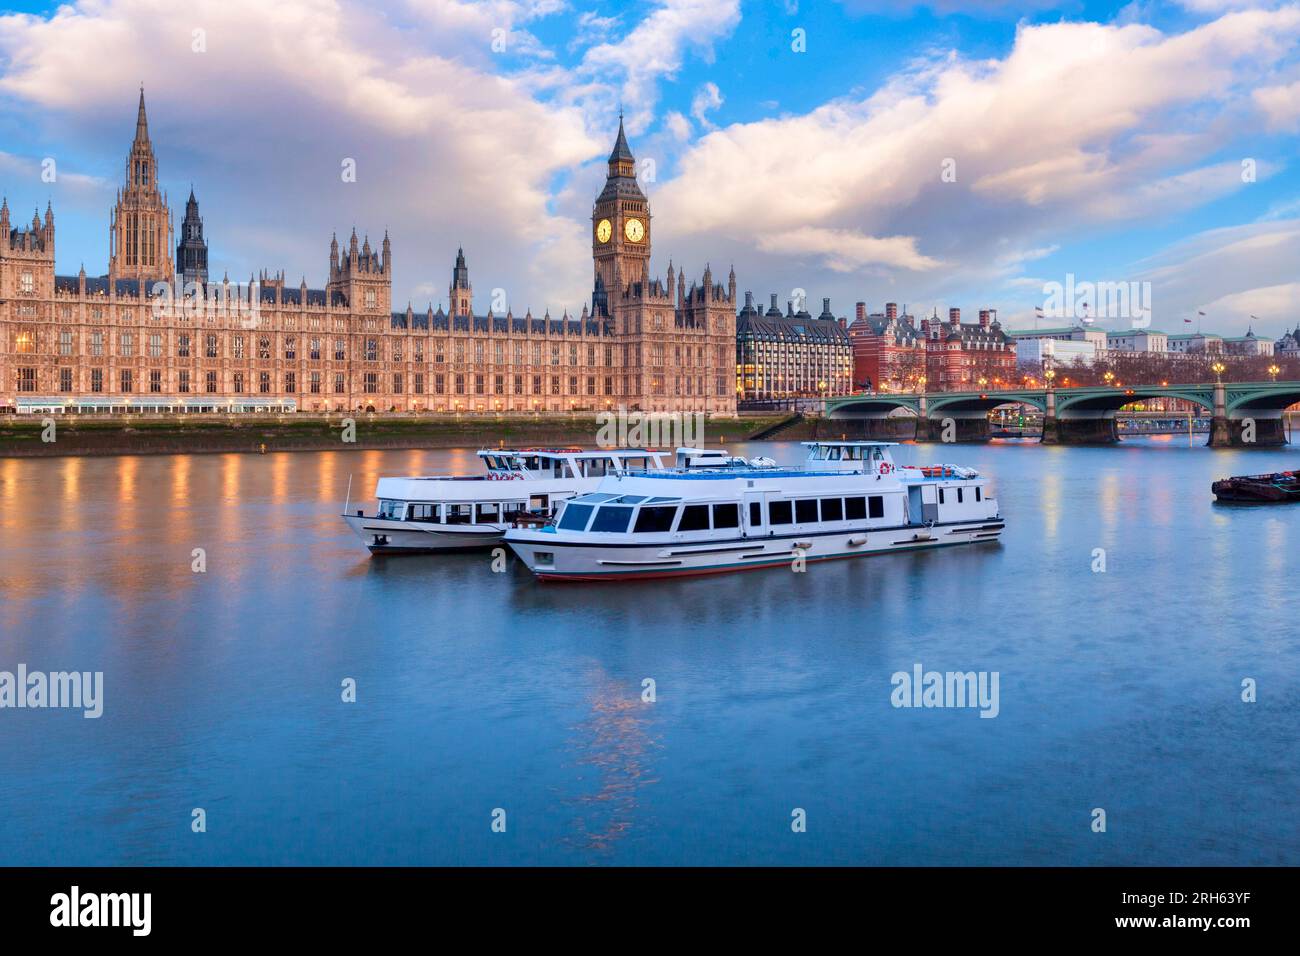 Big Ben und die Houses of Parliament, London, Großbritannien, die Themse und Boote. Sehr leichte Bewegungsunschärfe auf dem vorderen Boot bei großen Größen. Stockfoto